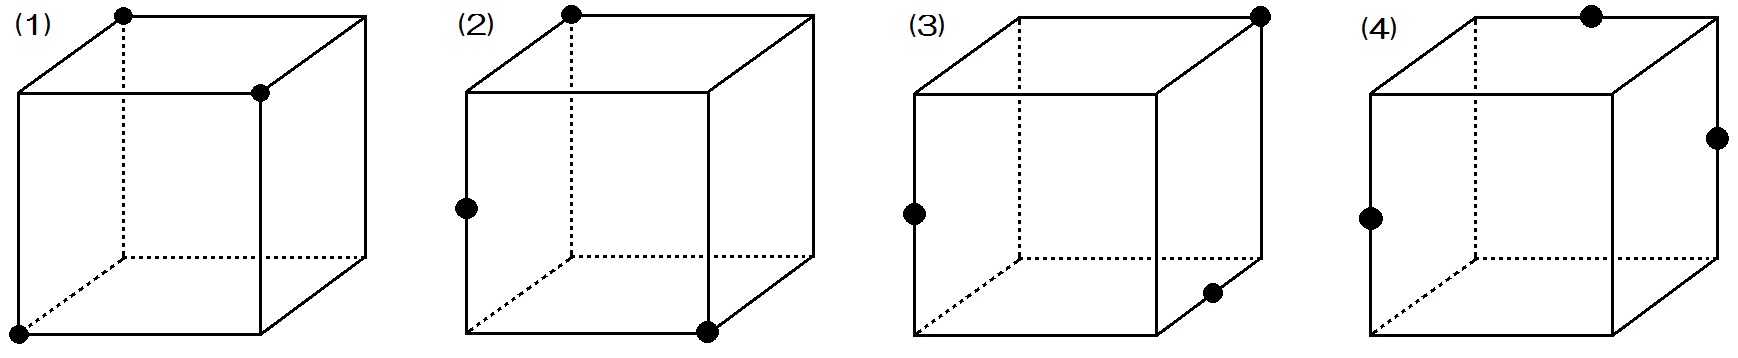 中学数学 空間図形 立体の切断問題のコツ